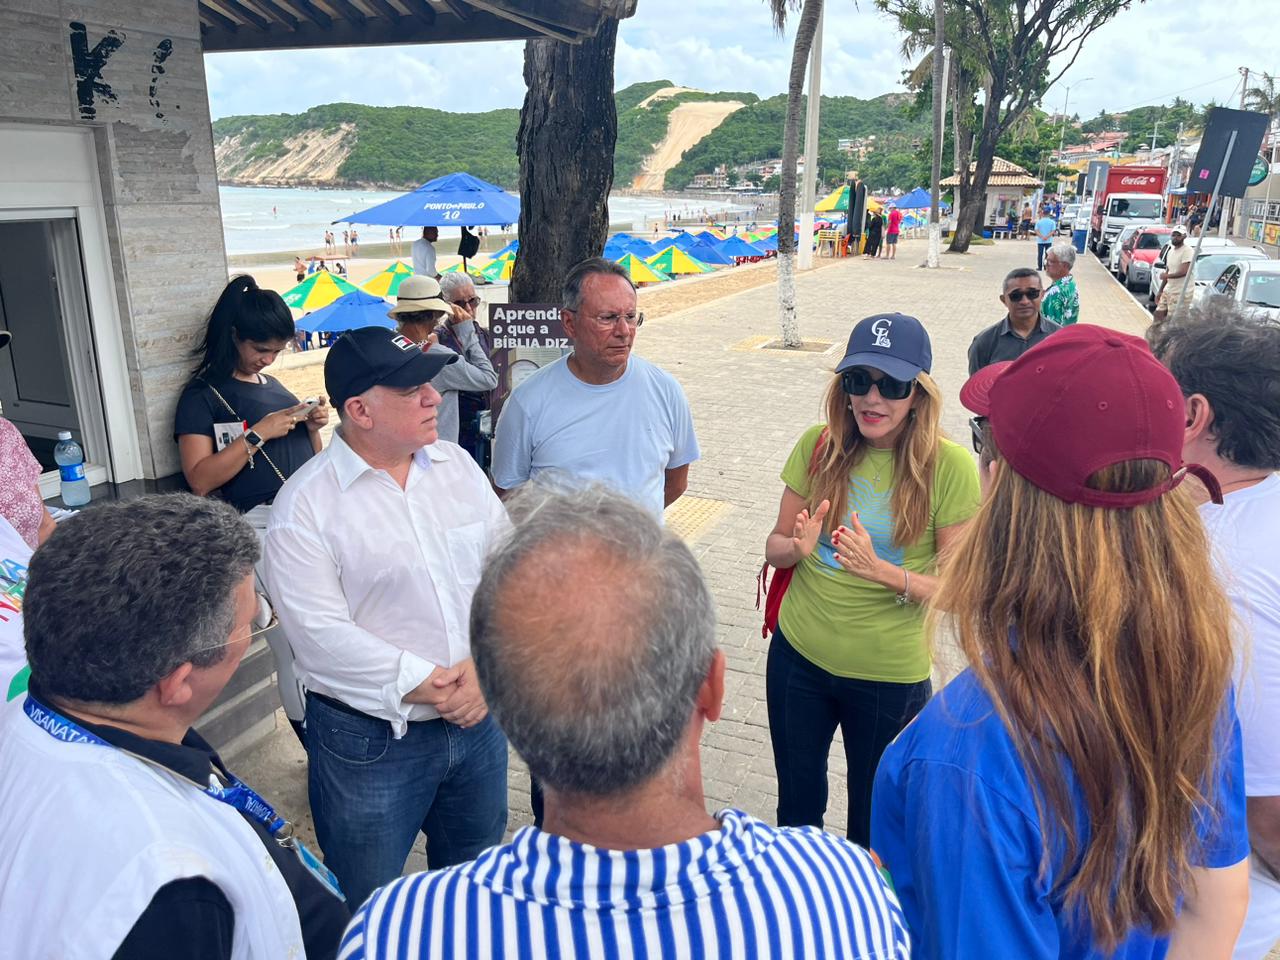 Imagem feita no calcadão da praia de ponta negra com o morro do careca aos fundos e no primeiro plano autoridades conversando em circulo.